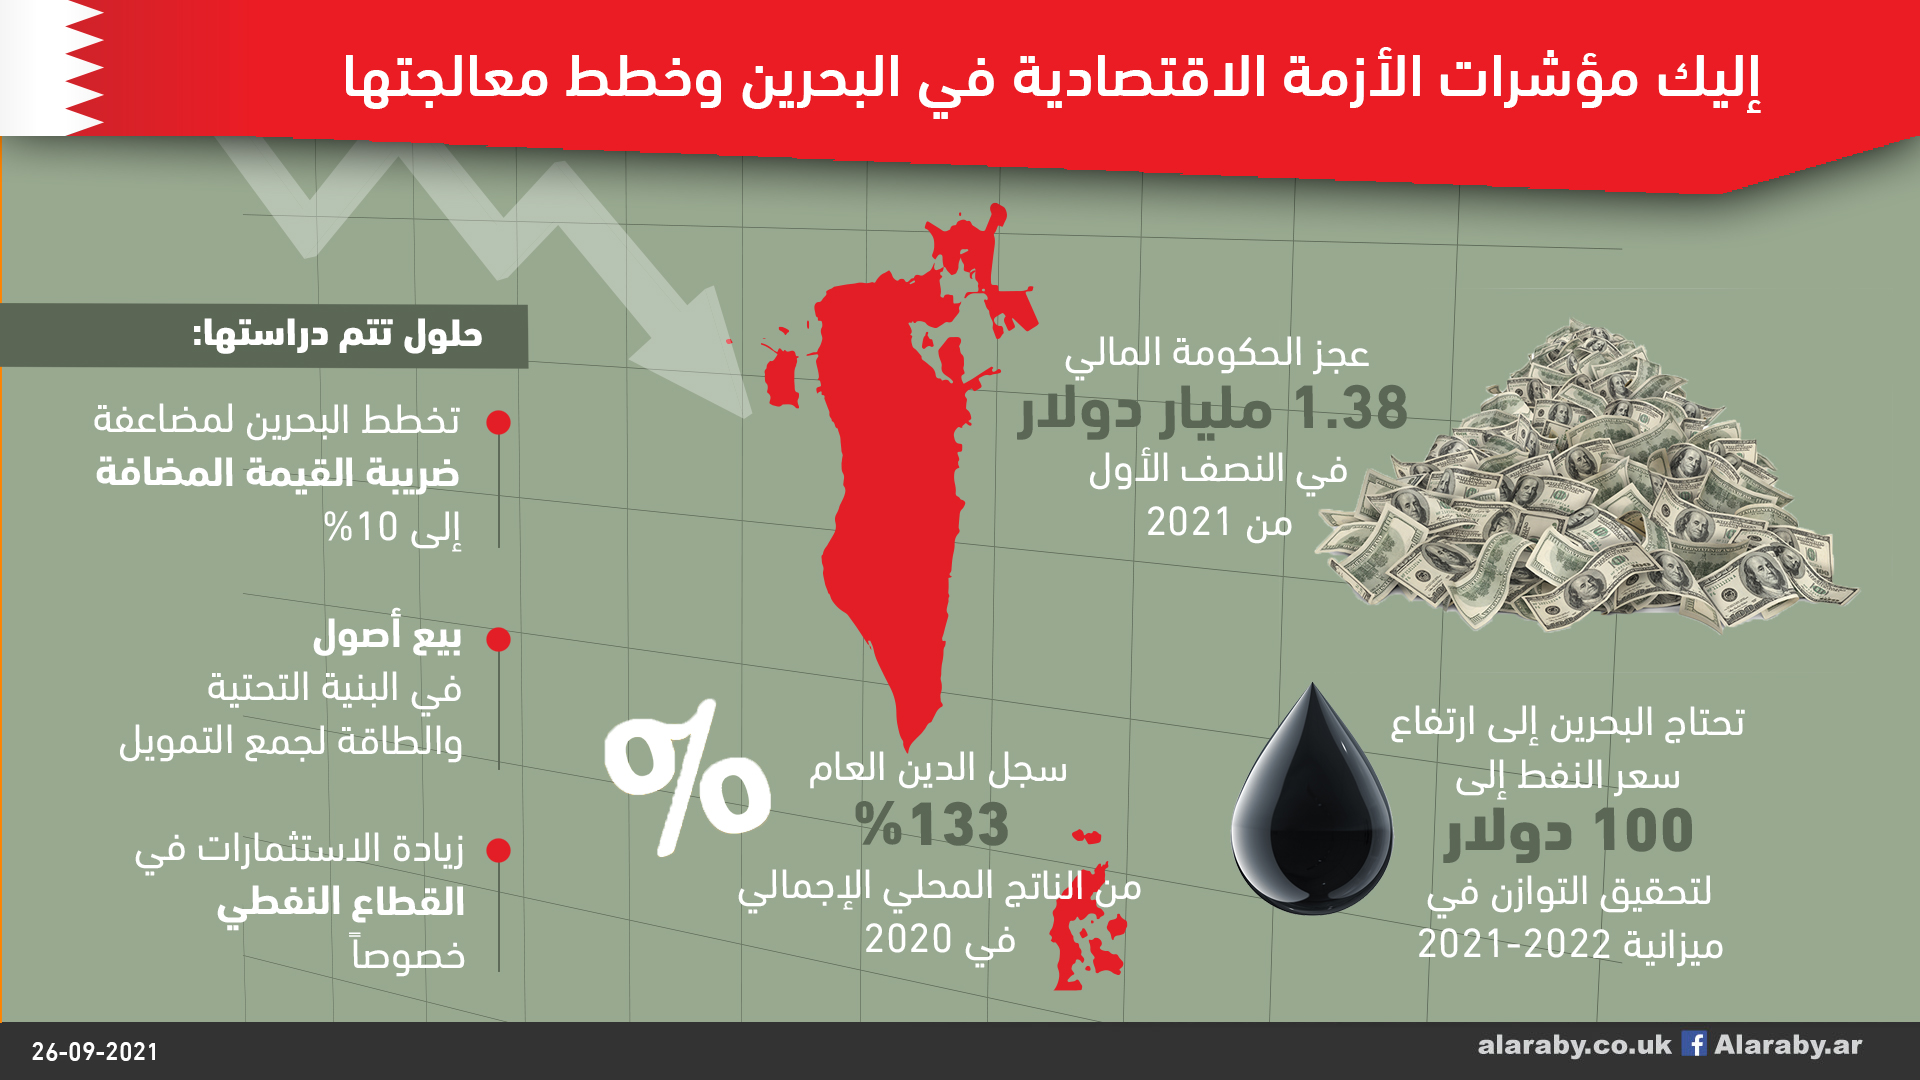 إليك مؤشرات الأزمة الاقتصادية في البحرين وخطط معالجتها